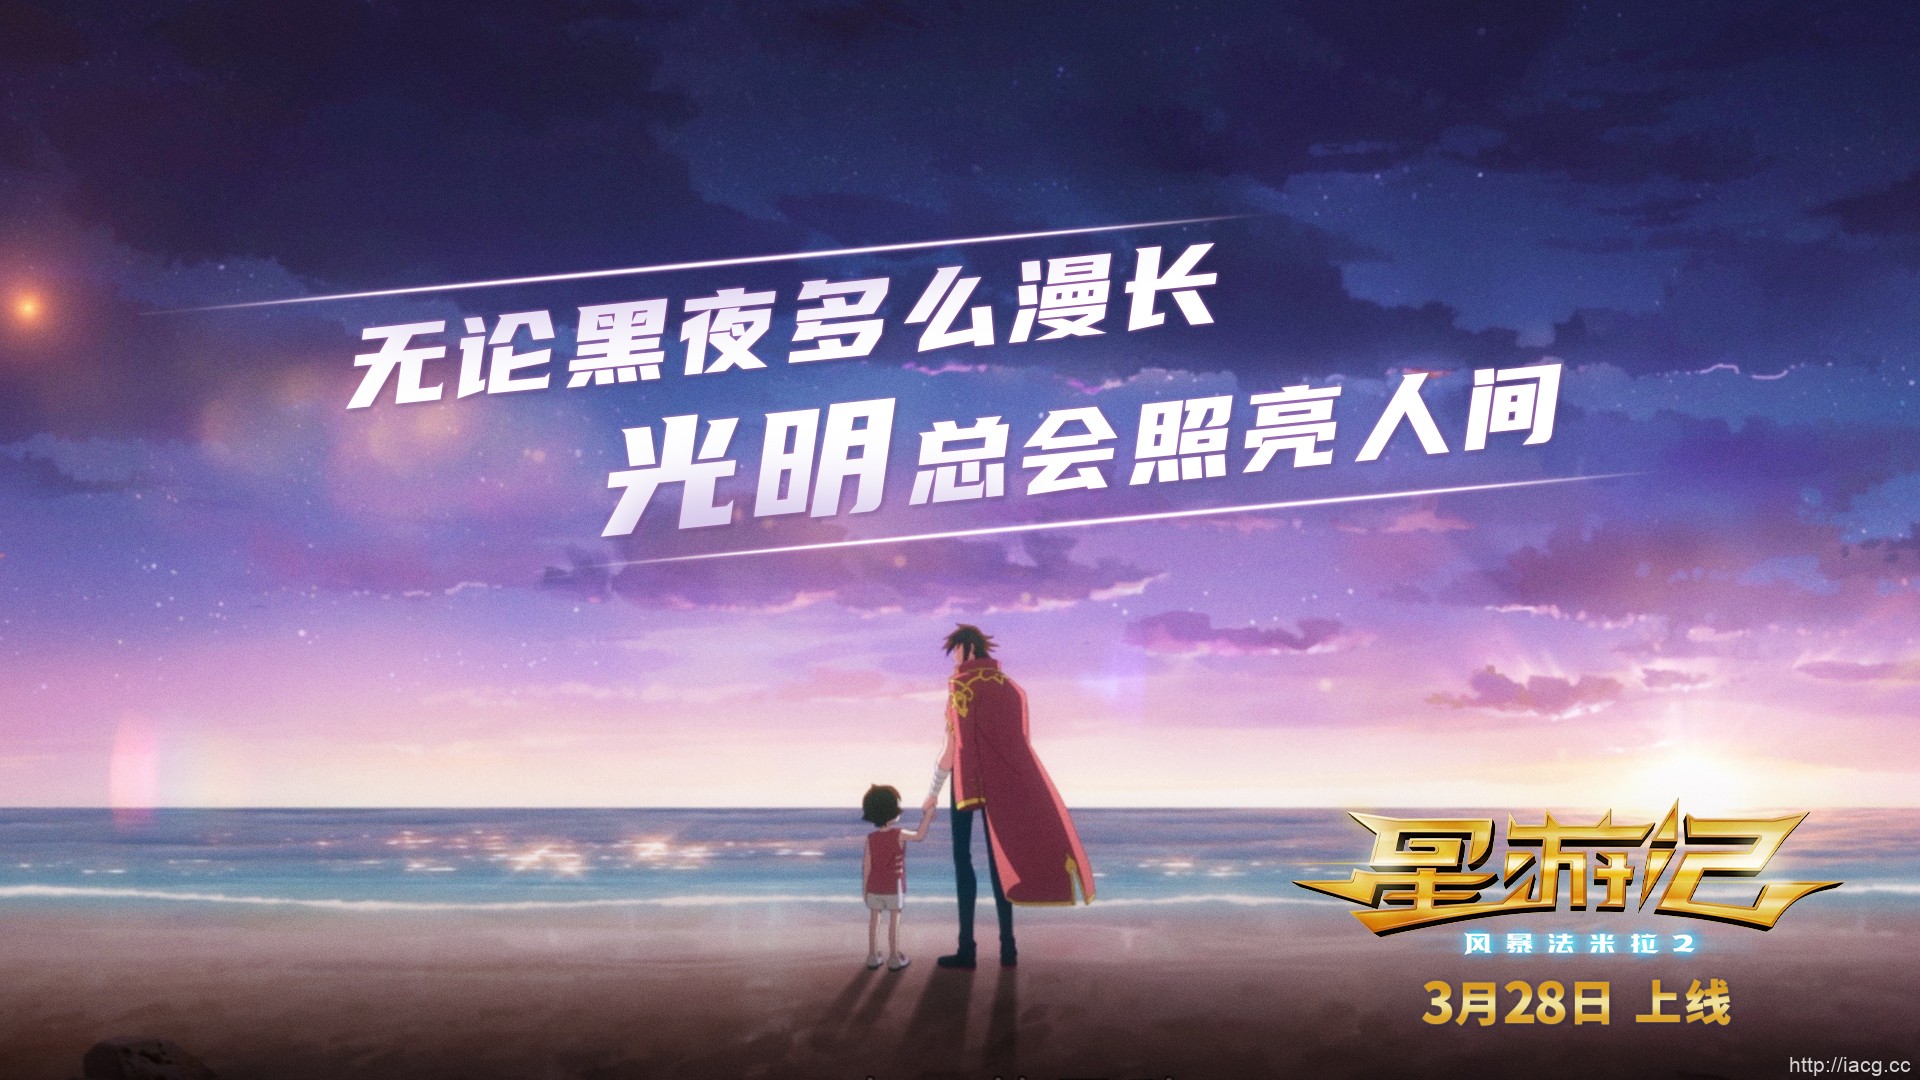 同期网络预约人次TOP1 电影 《星游记2》3月28日英雄重聚